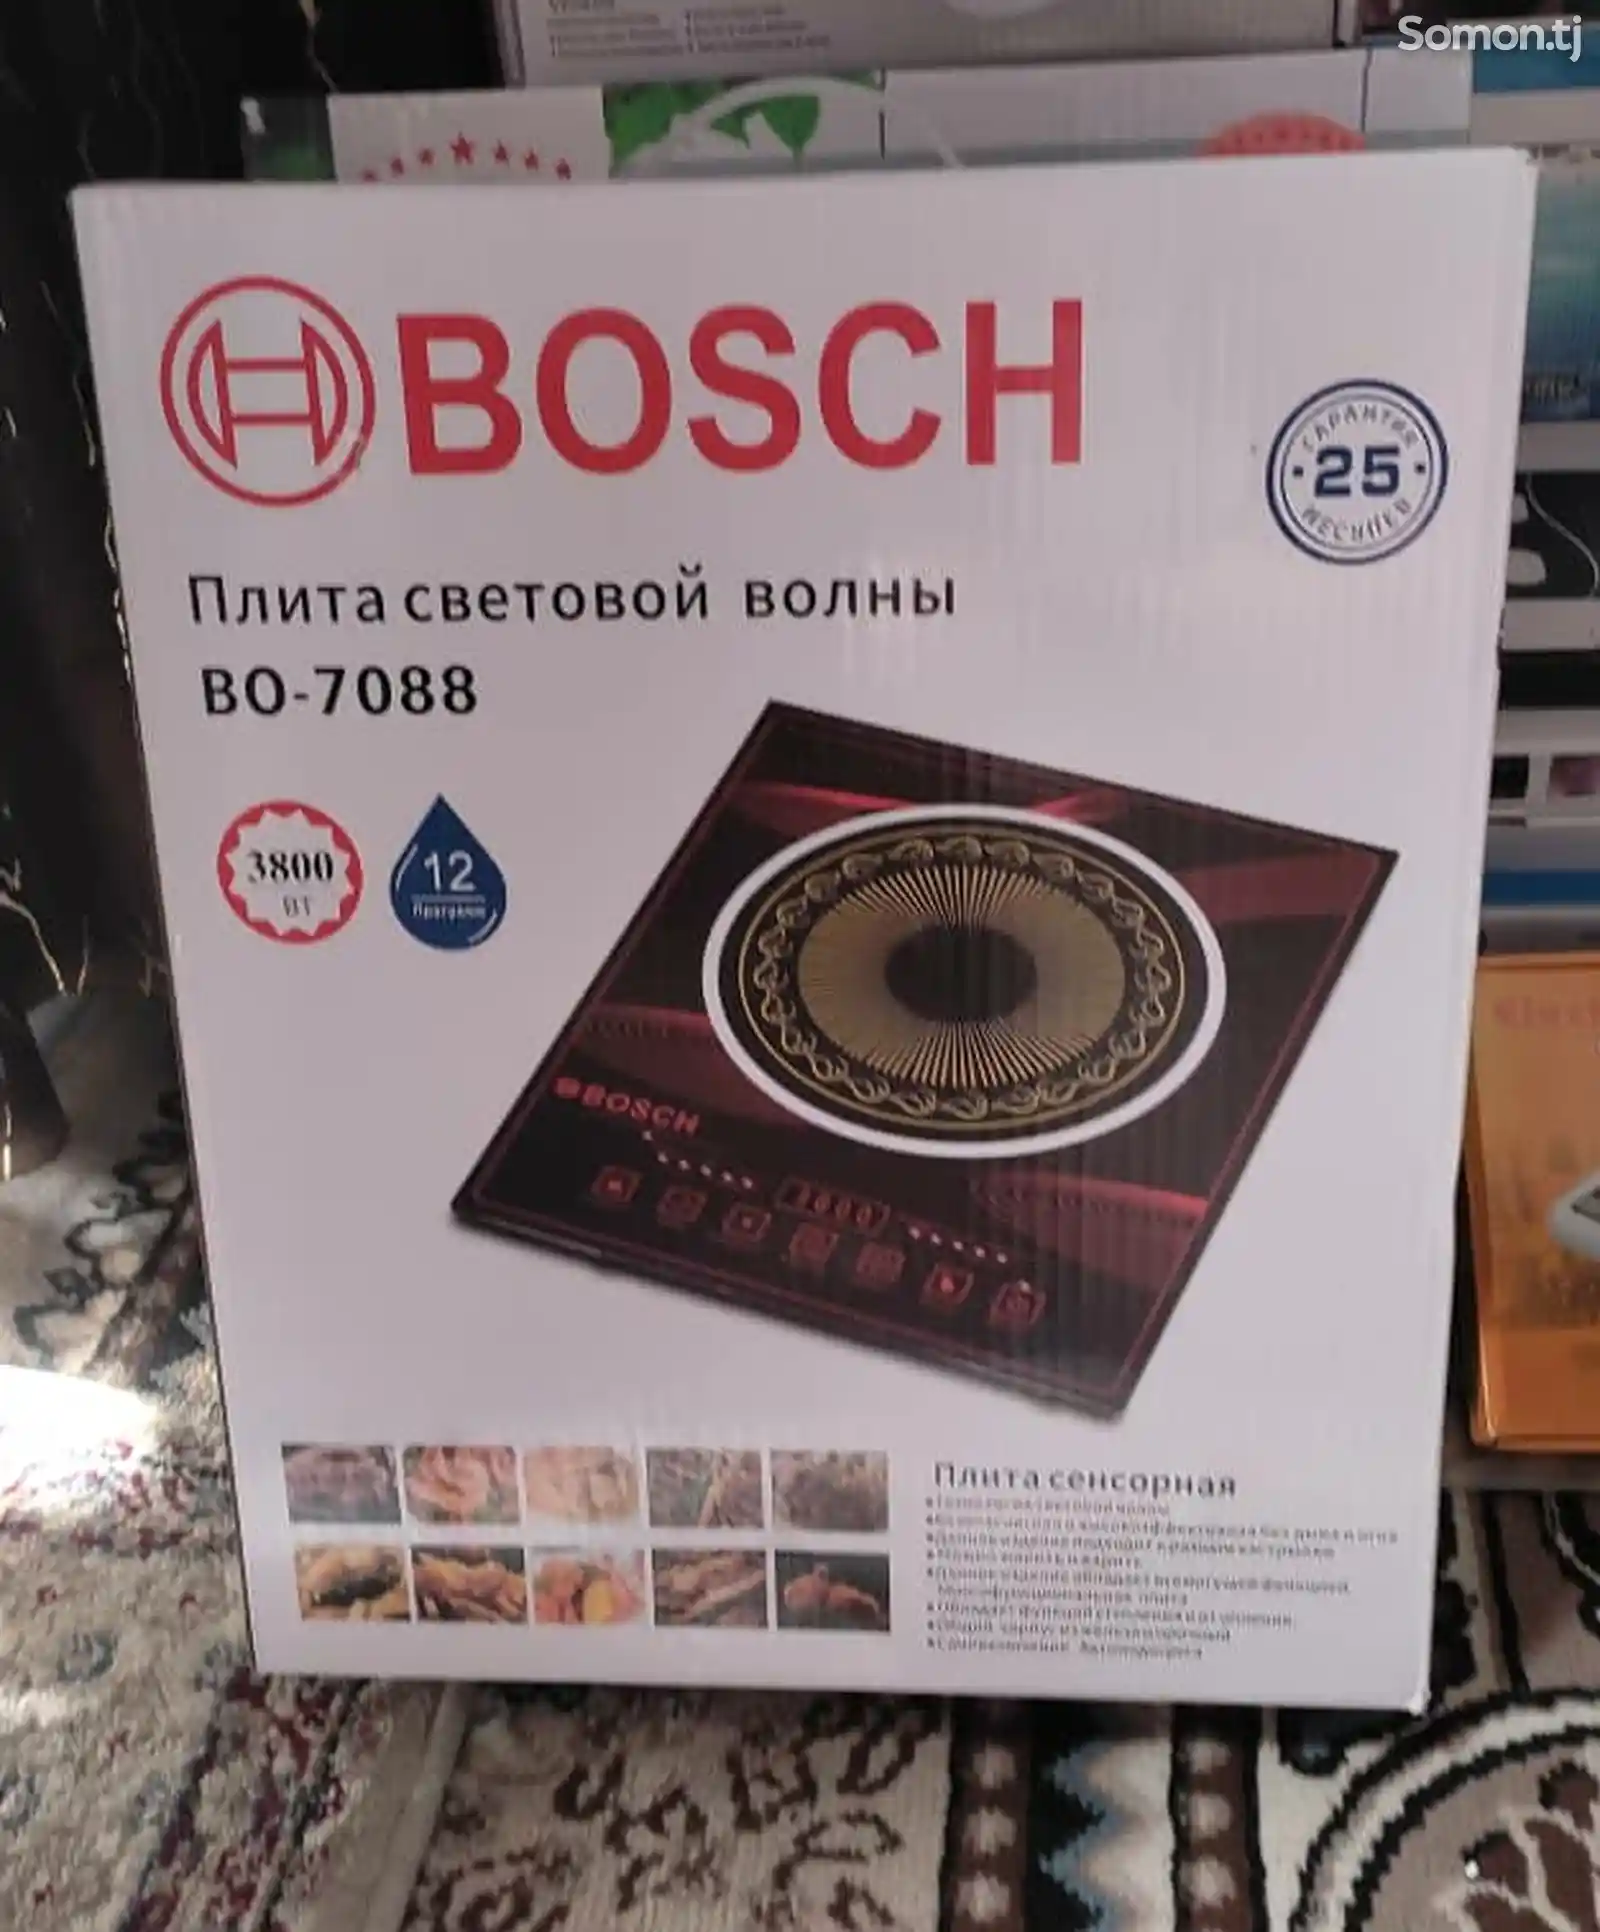 Плита сенсорная Bosch-3800